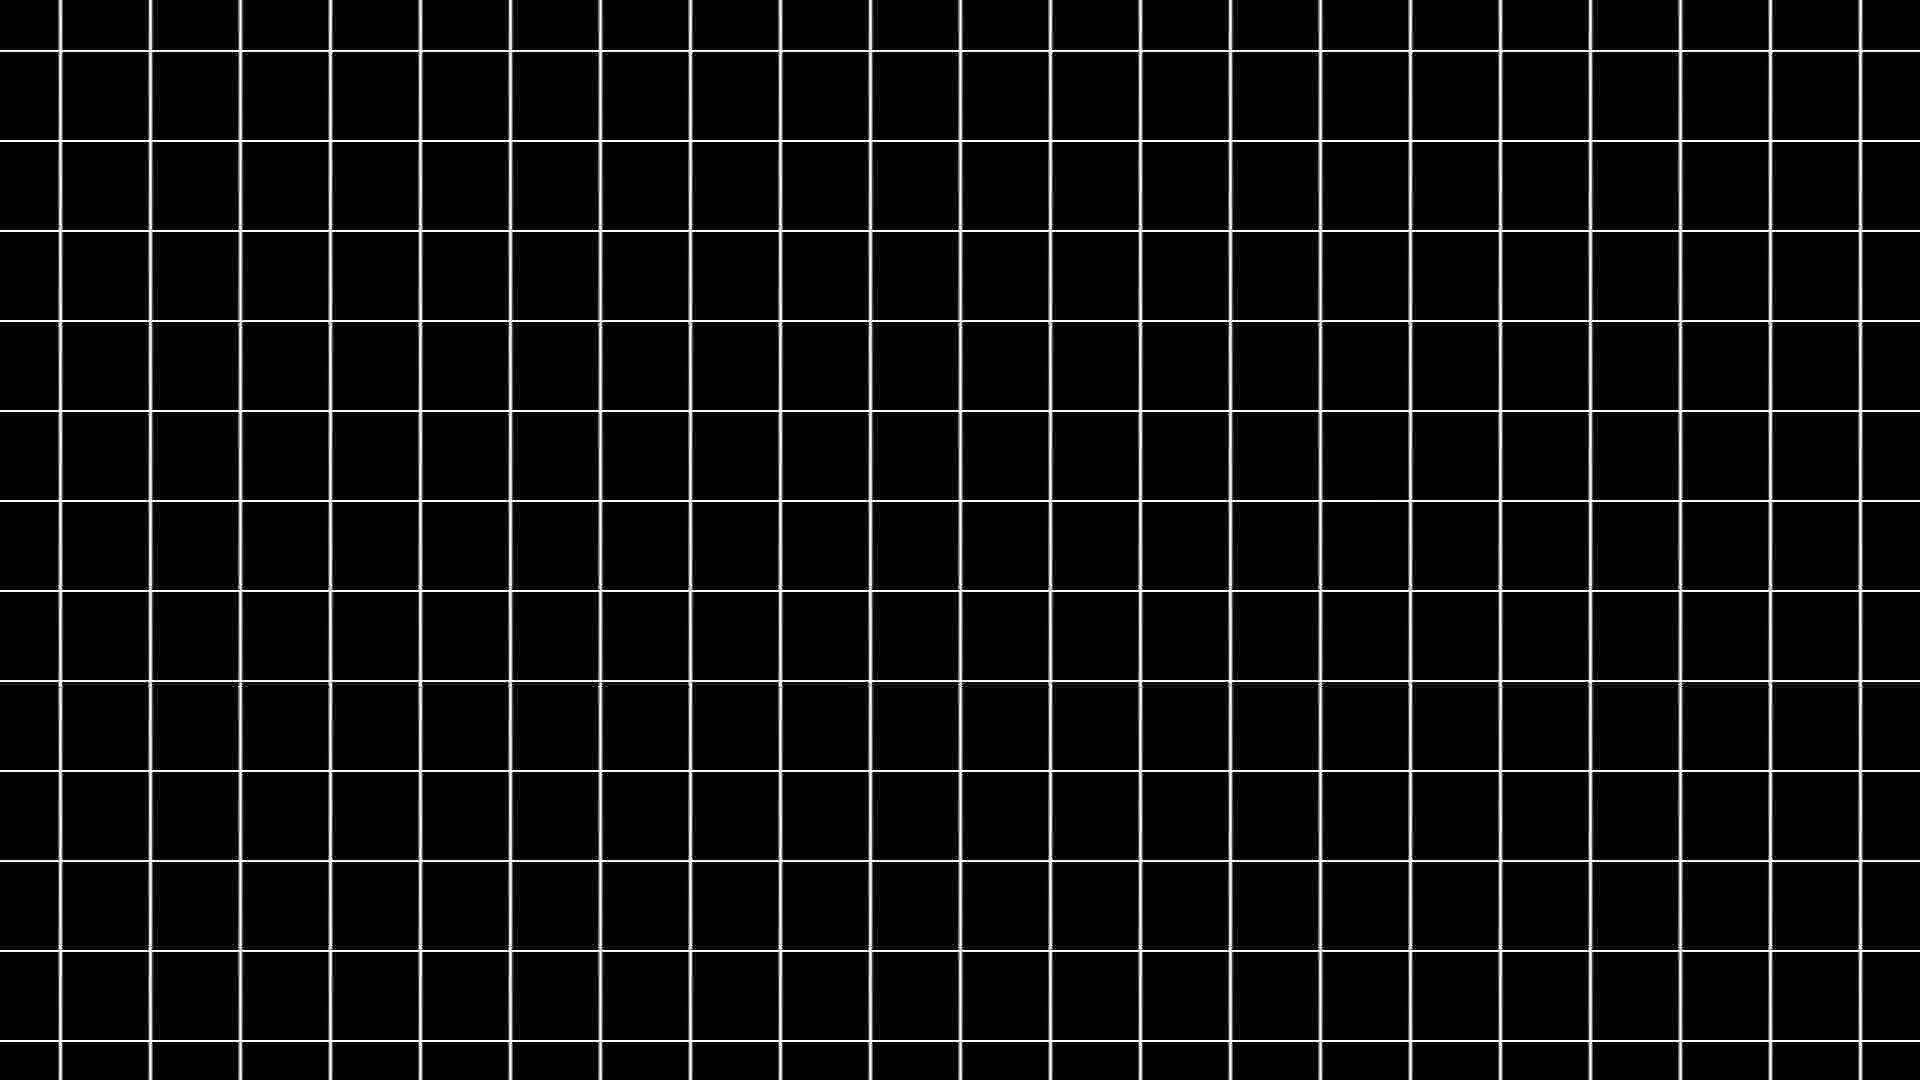 Schwarzesund Weißes Ästhetisches Optisches Täuschungsbild Wallpaper